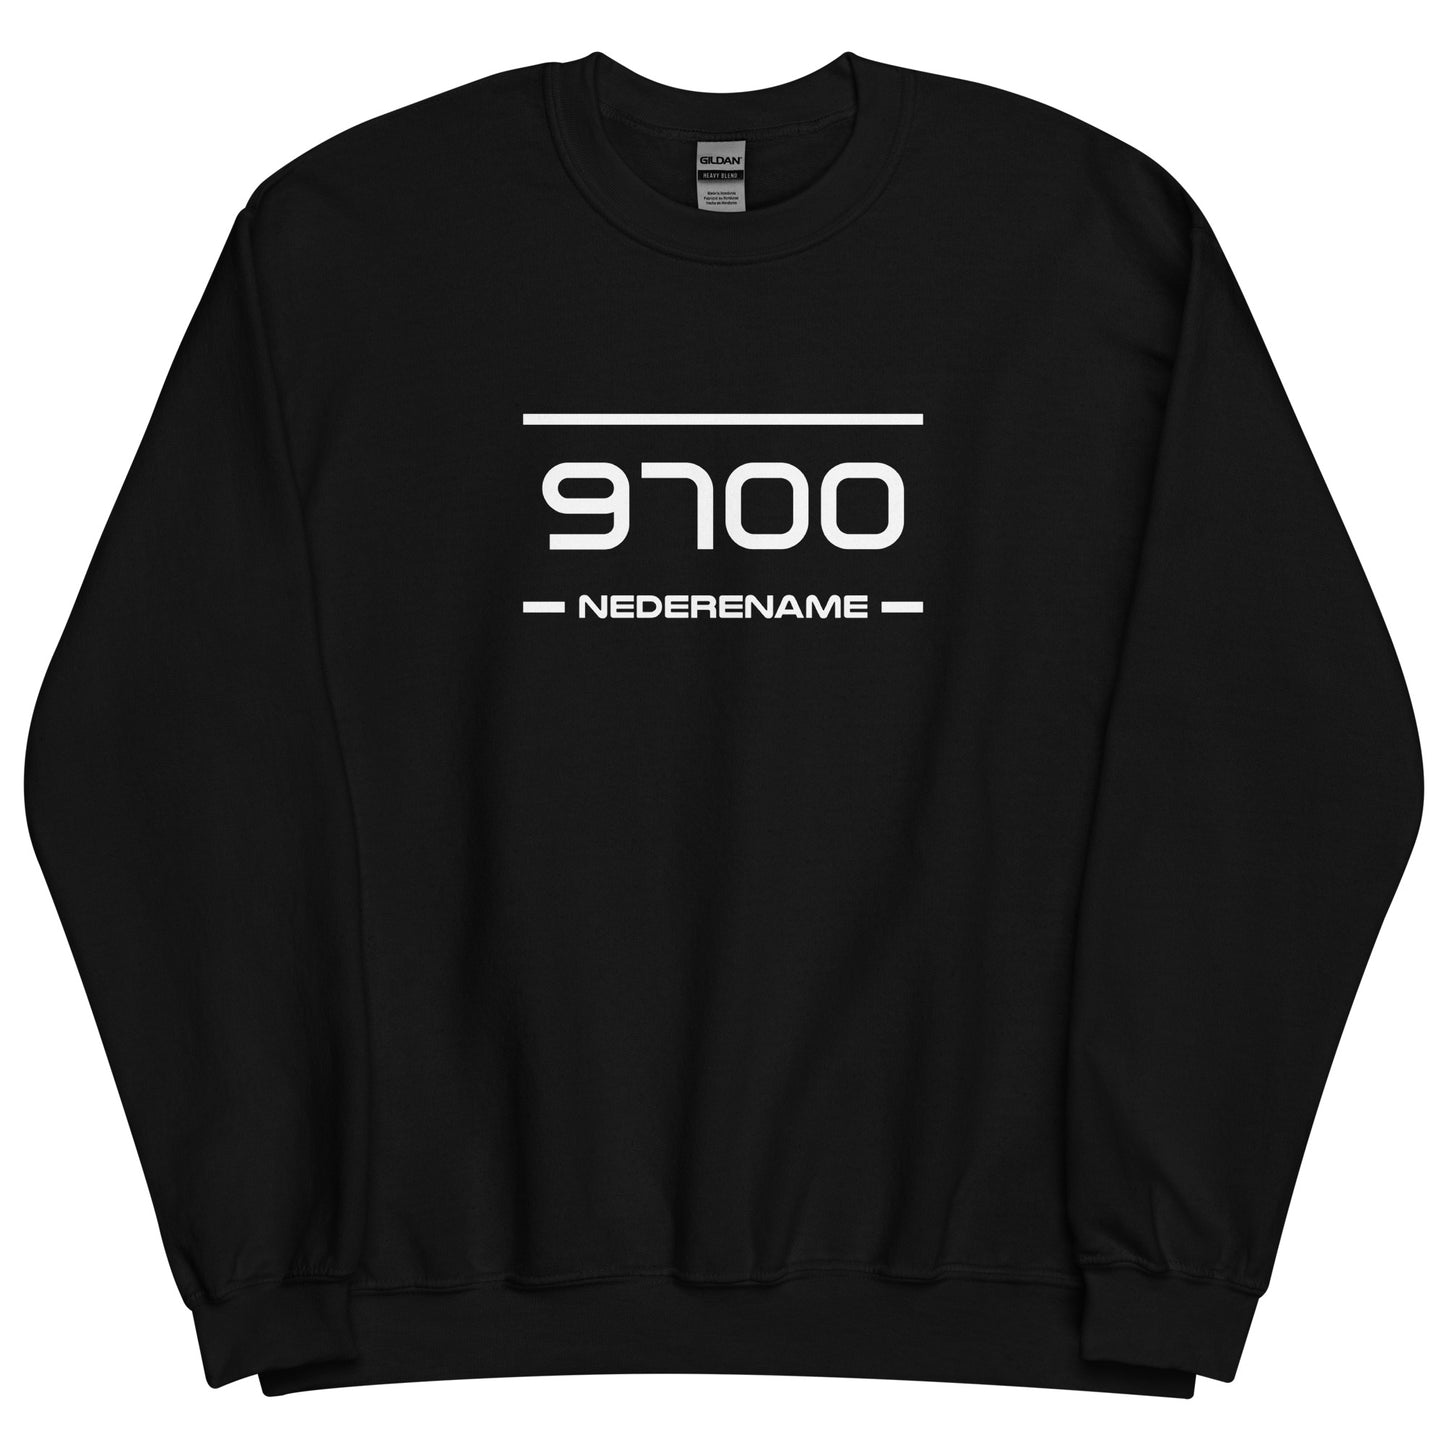 Sweater - 9700 - Nederename (M/V)